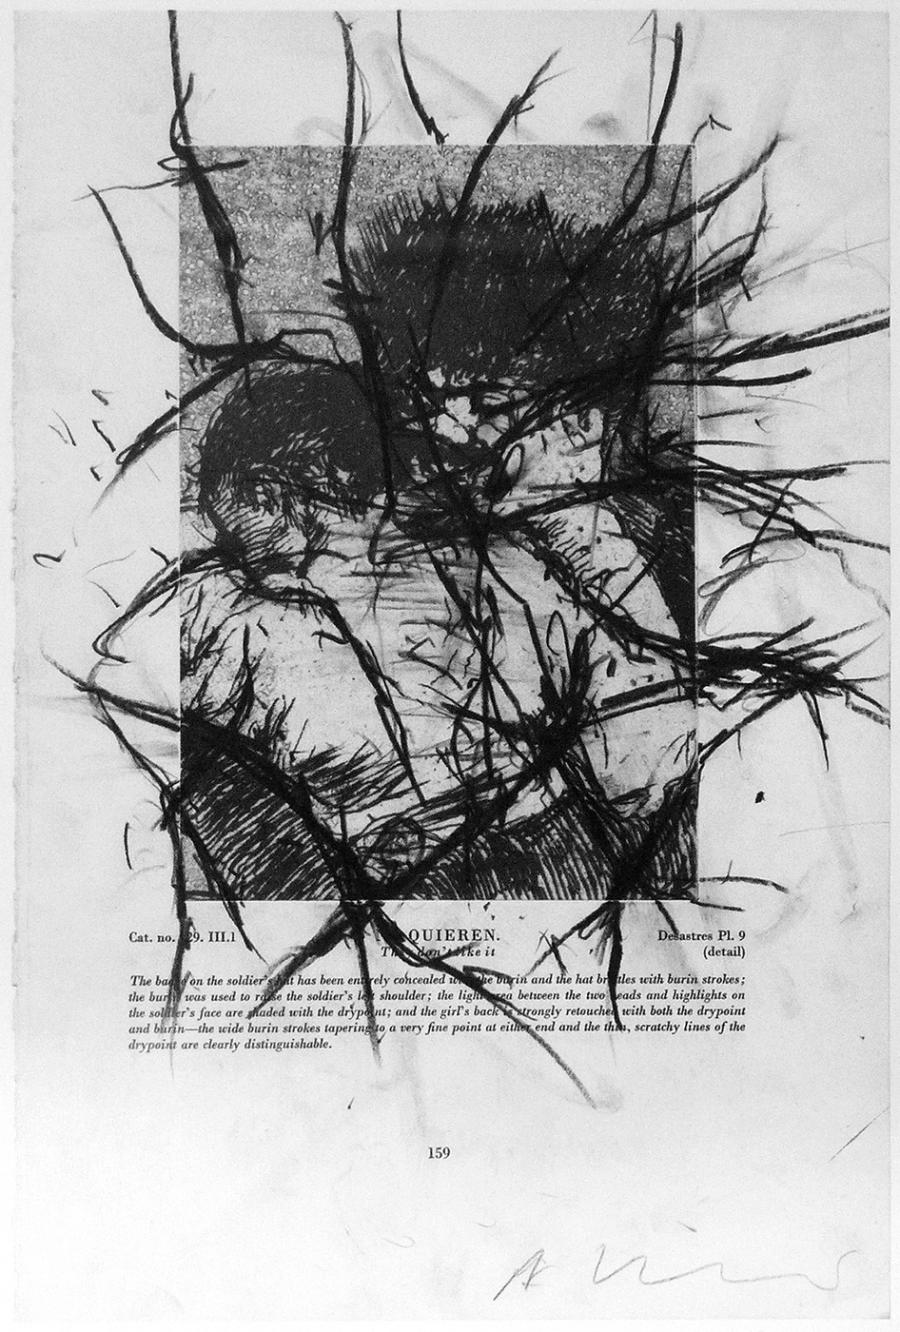 Serie Goya. 1990